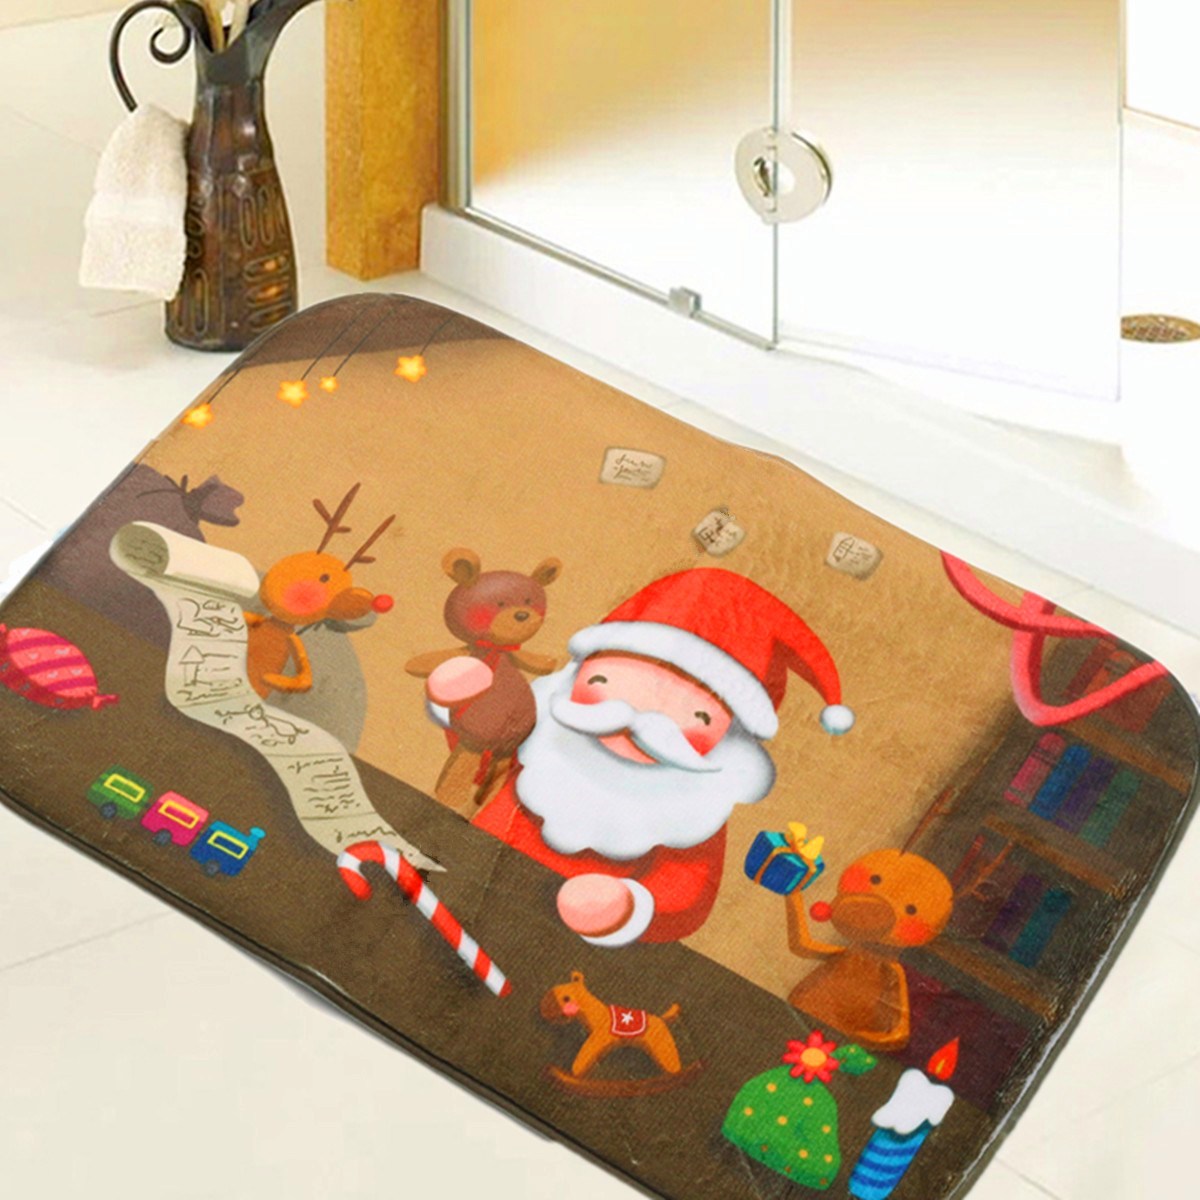 40x60cm-Christmas-Non-slip--Absorbent--Floor-Mat-Bathroom-Kitchen-Bedroom-Doormat-Carpet-Decor-1104387-1